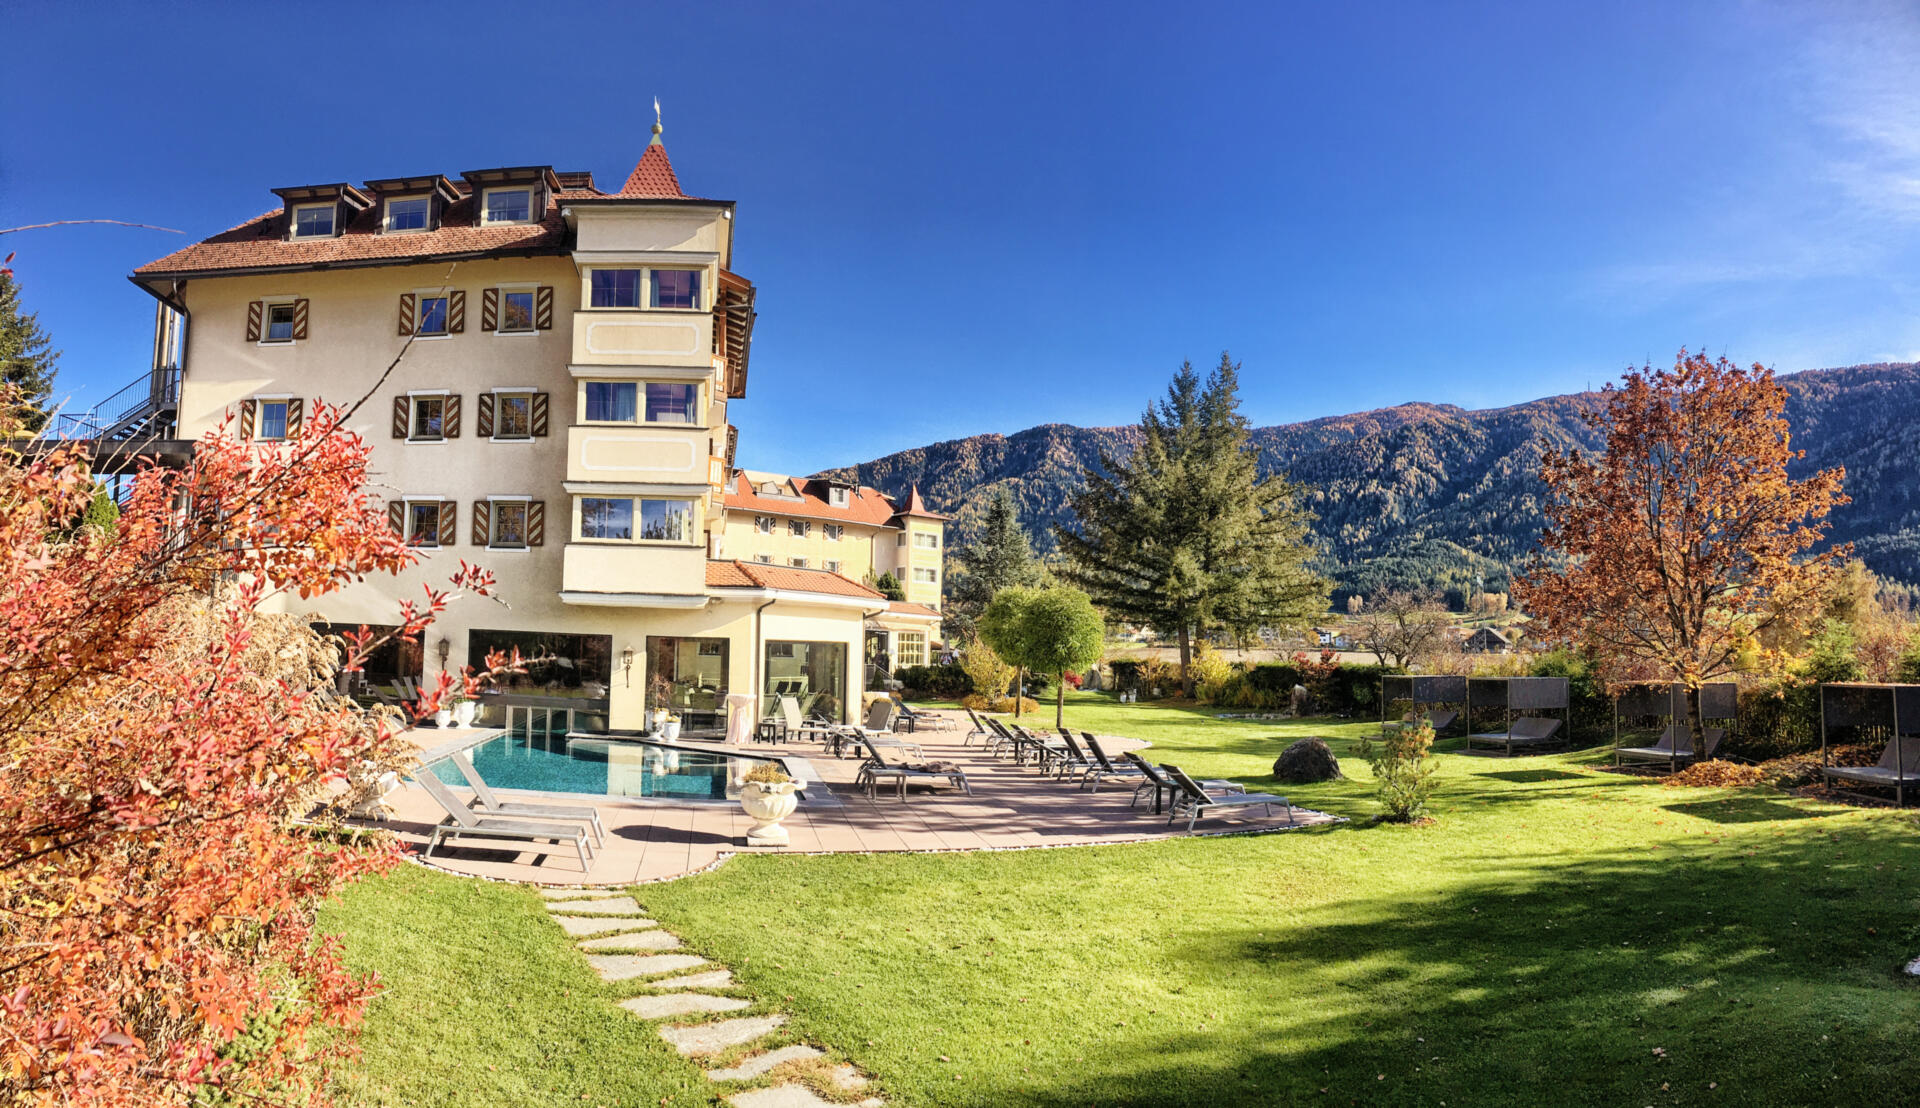 Nicht nur anders, einfach besonders! Das 4 Sterne Hotel & SPA Majestic in Reischach/Bruneck zum attraktiven Preis erleben.